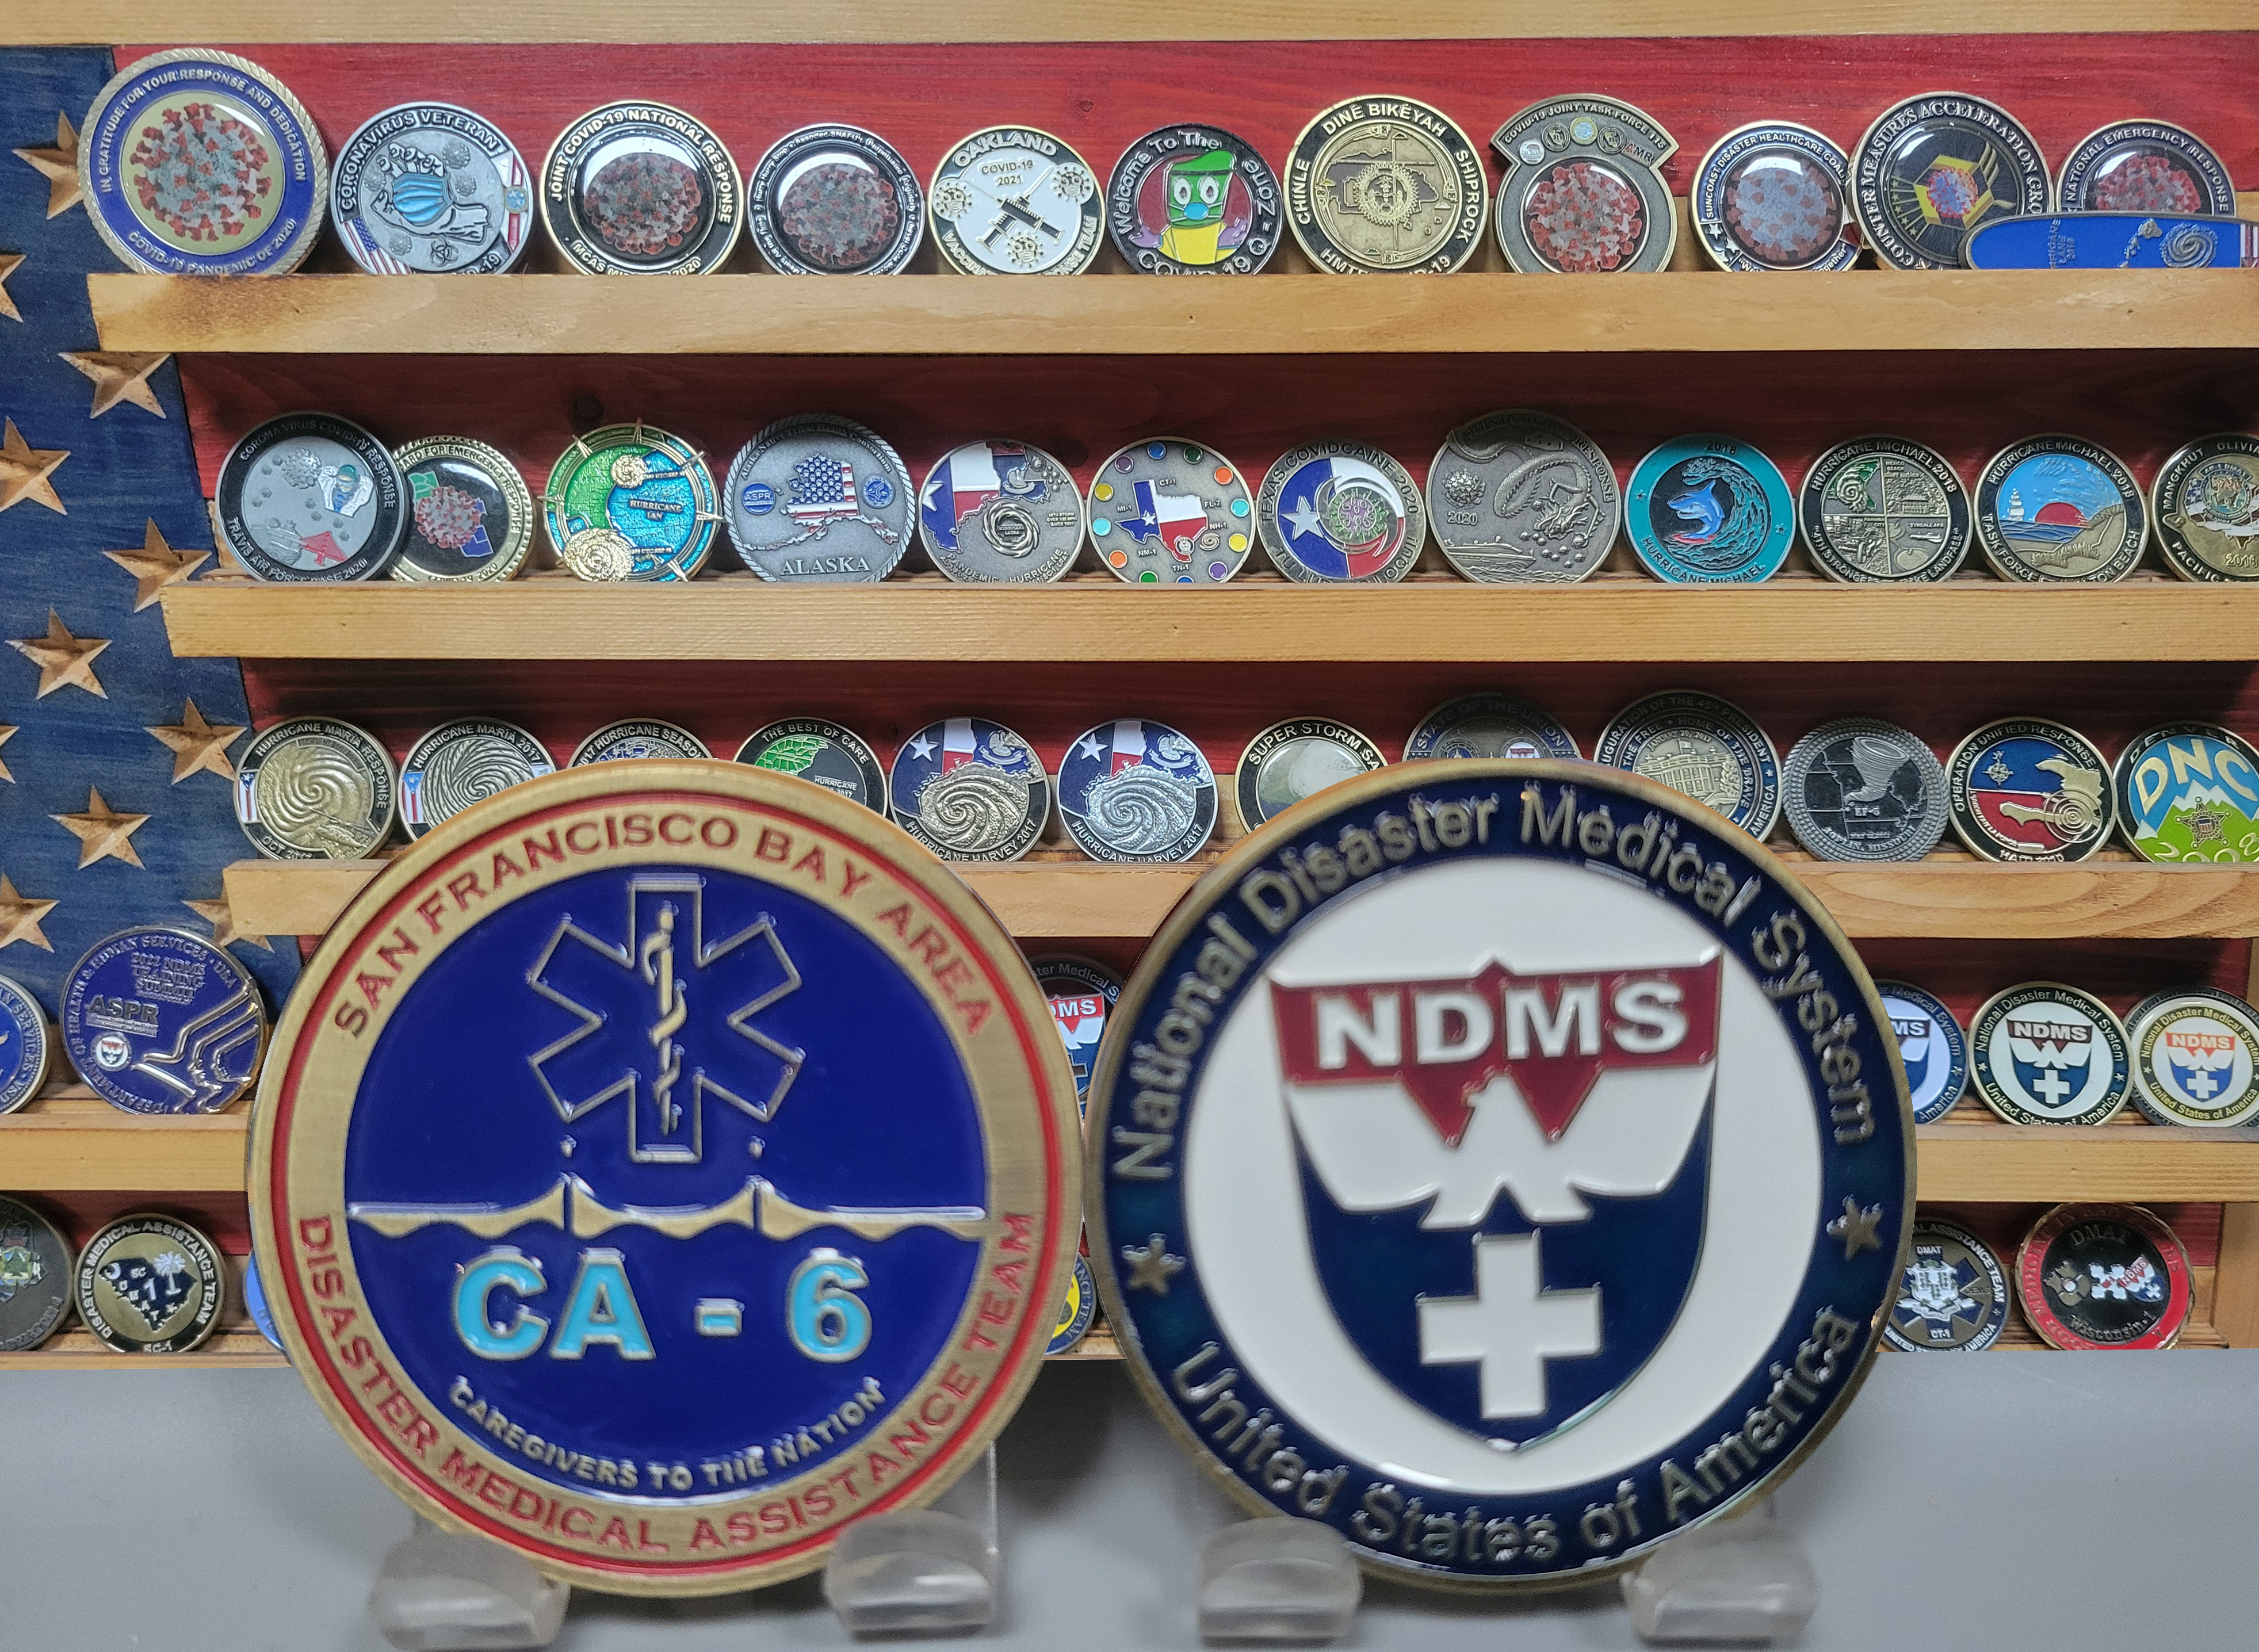 CA-6 DMAT Team coin